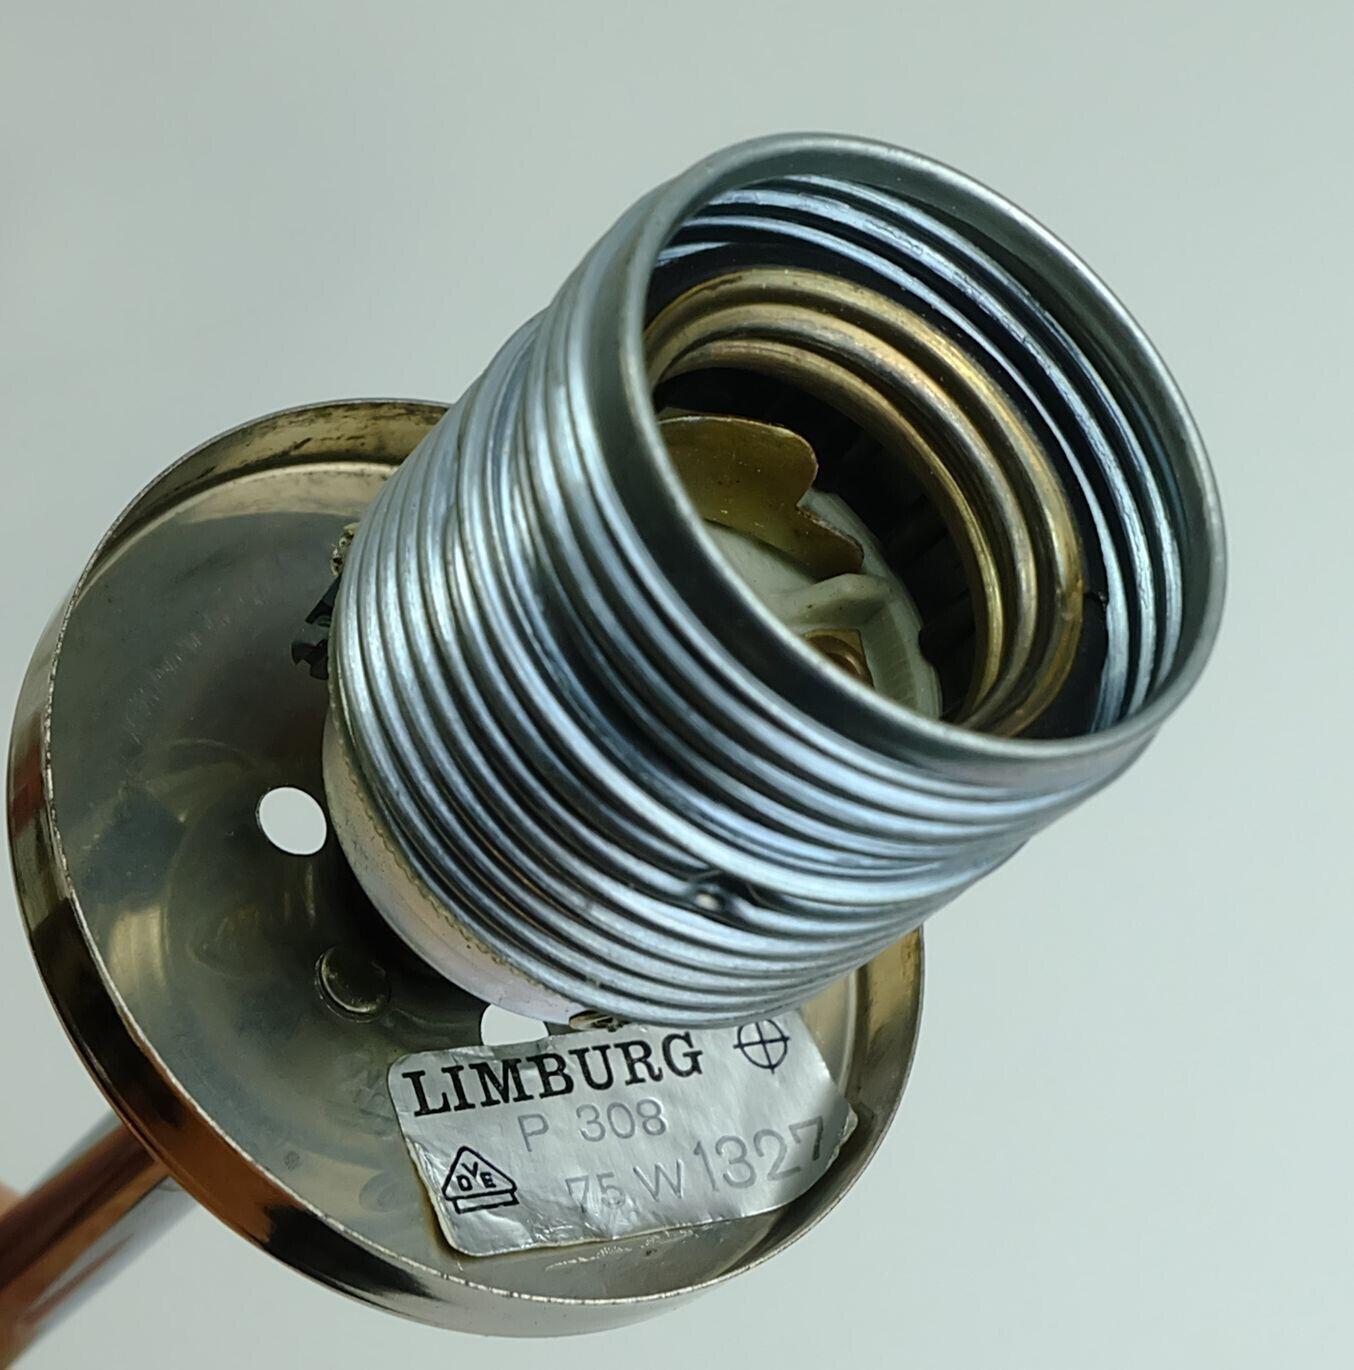 Lampe des années 1960 conçue par Helena Tynell pour Glashuette Limburg. Abat-jour en verre bulle transparent, tube chromé sur le dessus. Fil électrique noir et capotage noir. Peut contenir 1 ampoule E27 (l'ampoule n'est pas incluse dans l'offre).